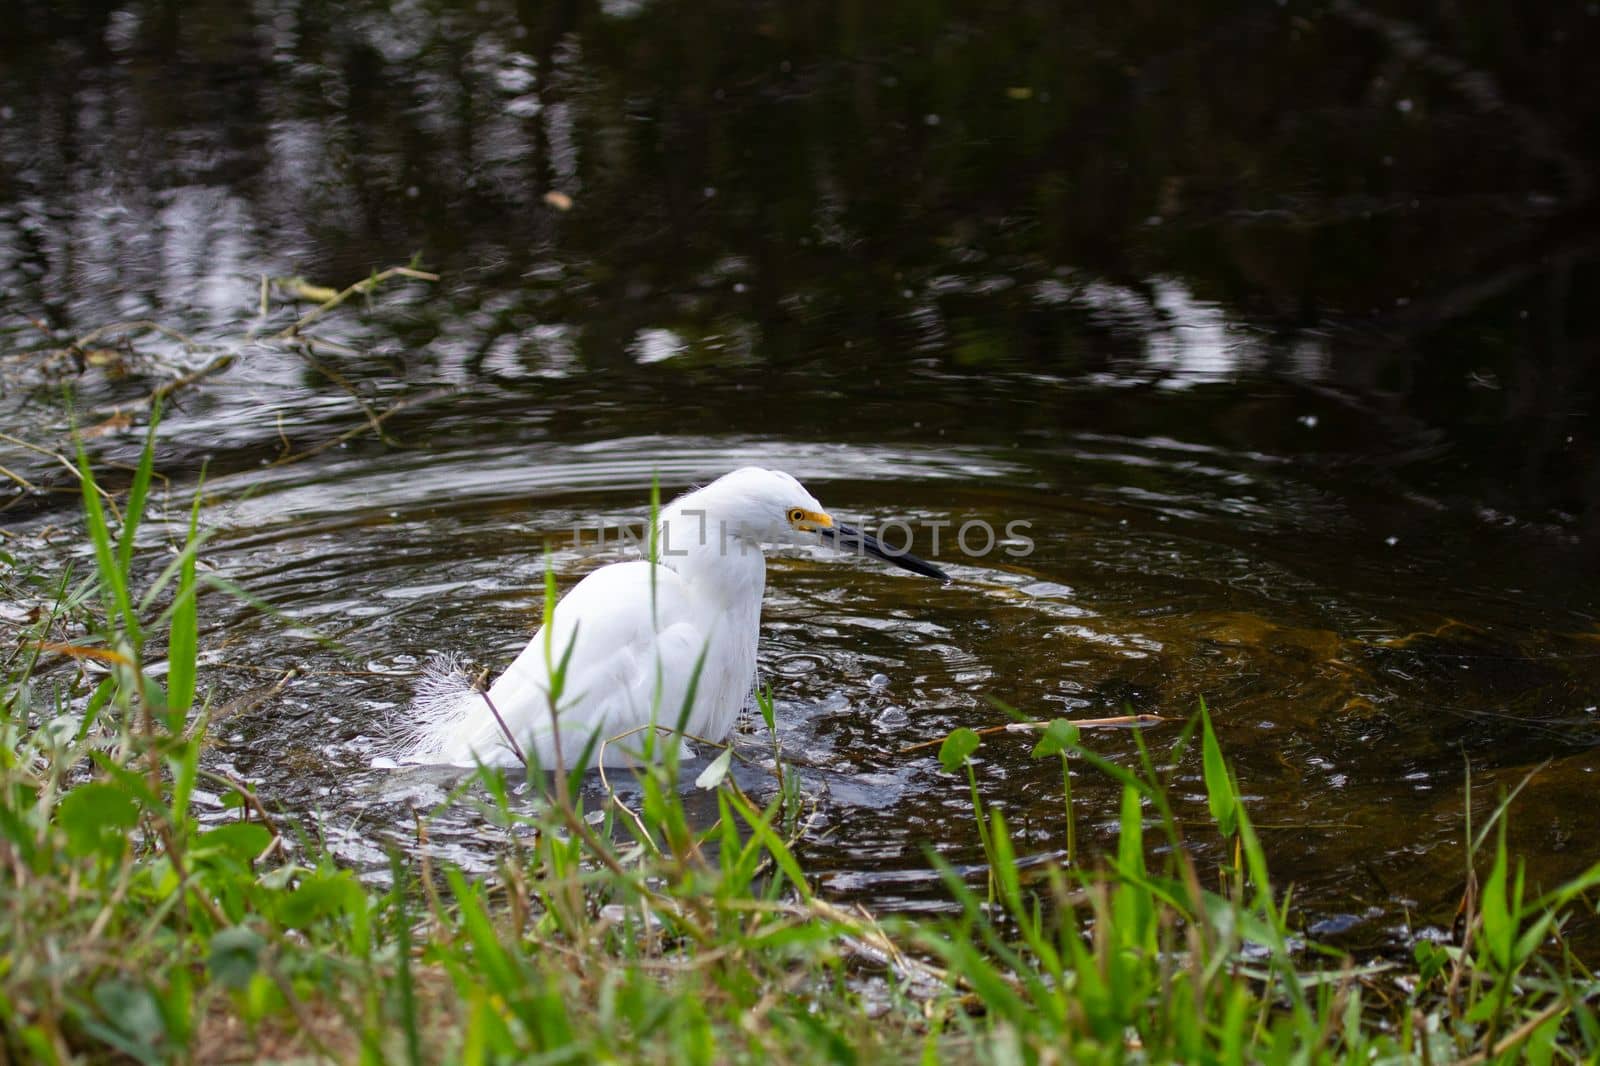 Snowy egret wading in water, found in Everglades, Florida